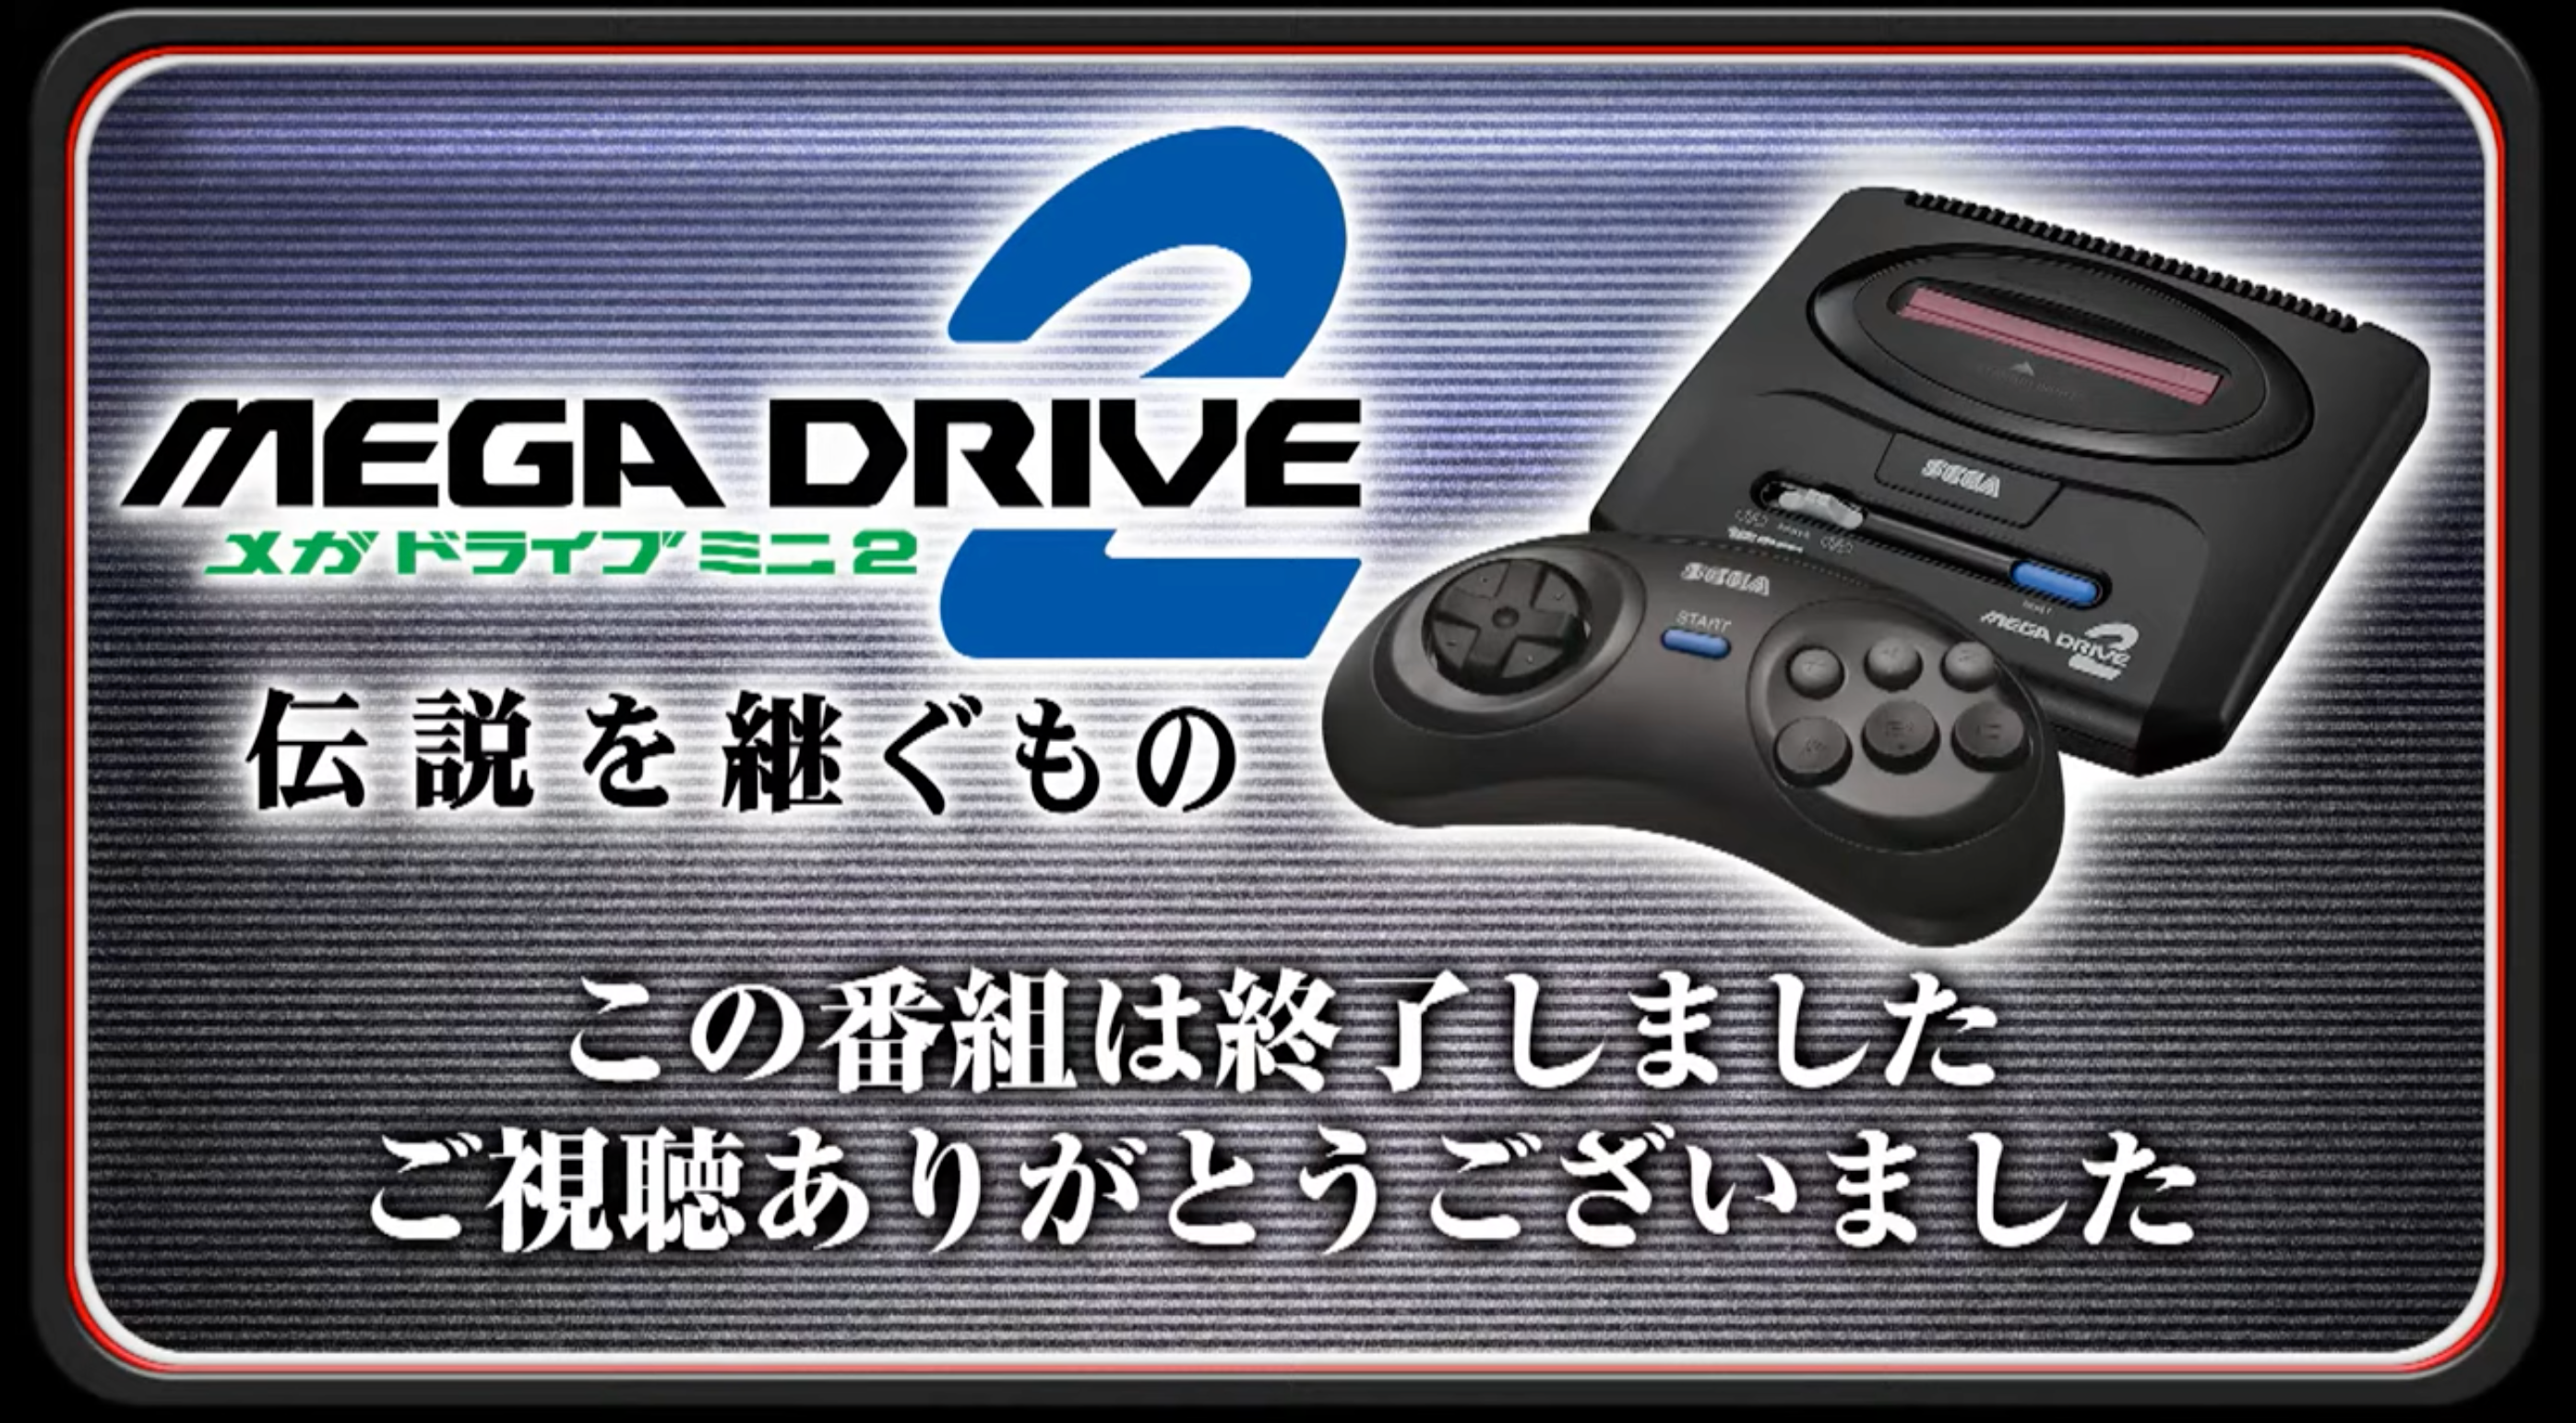 كشفت شركة Sega MegaDrive النقاب عن Mini 2 ، والذي يتضمن ما يصل إلى 50 ميجا محرك وألعاب قرص مضغوط ضخمة